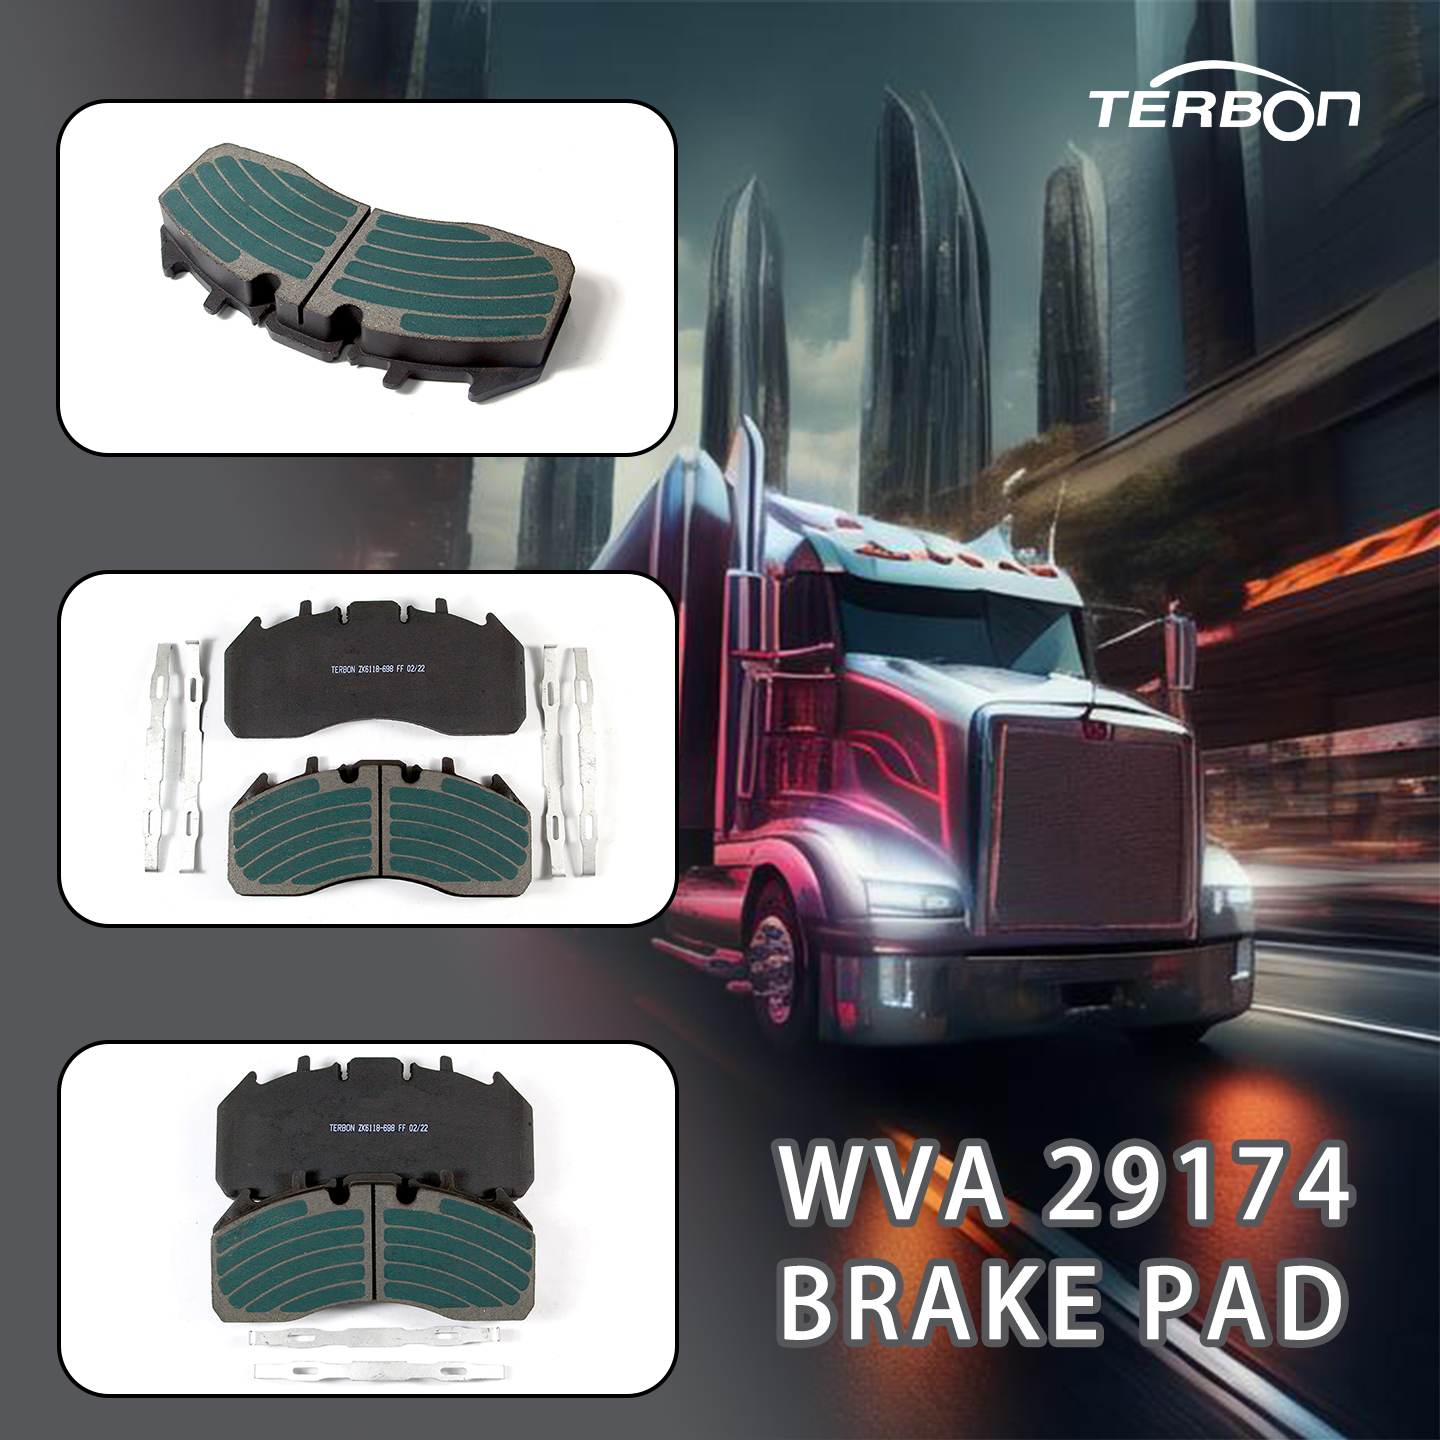 إصدار منتج جديد: وسادات فرامل WVA 29174 عالية الجودة من TERBON لشاحناتك الثقيلة